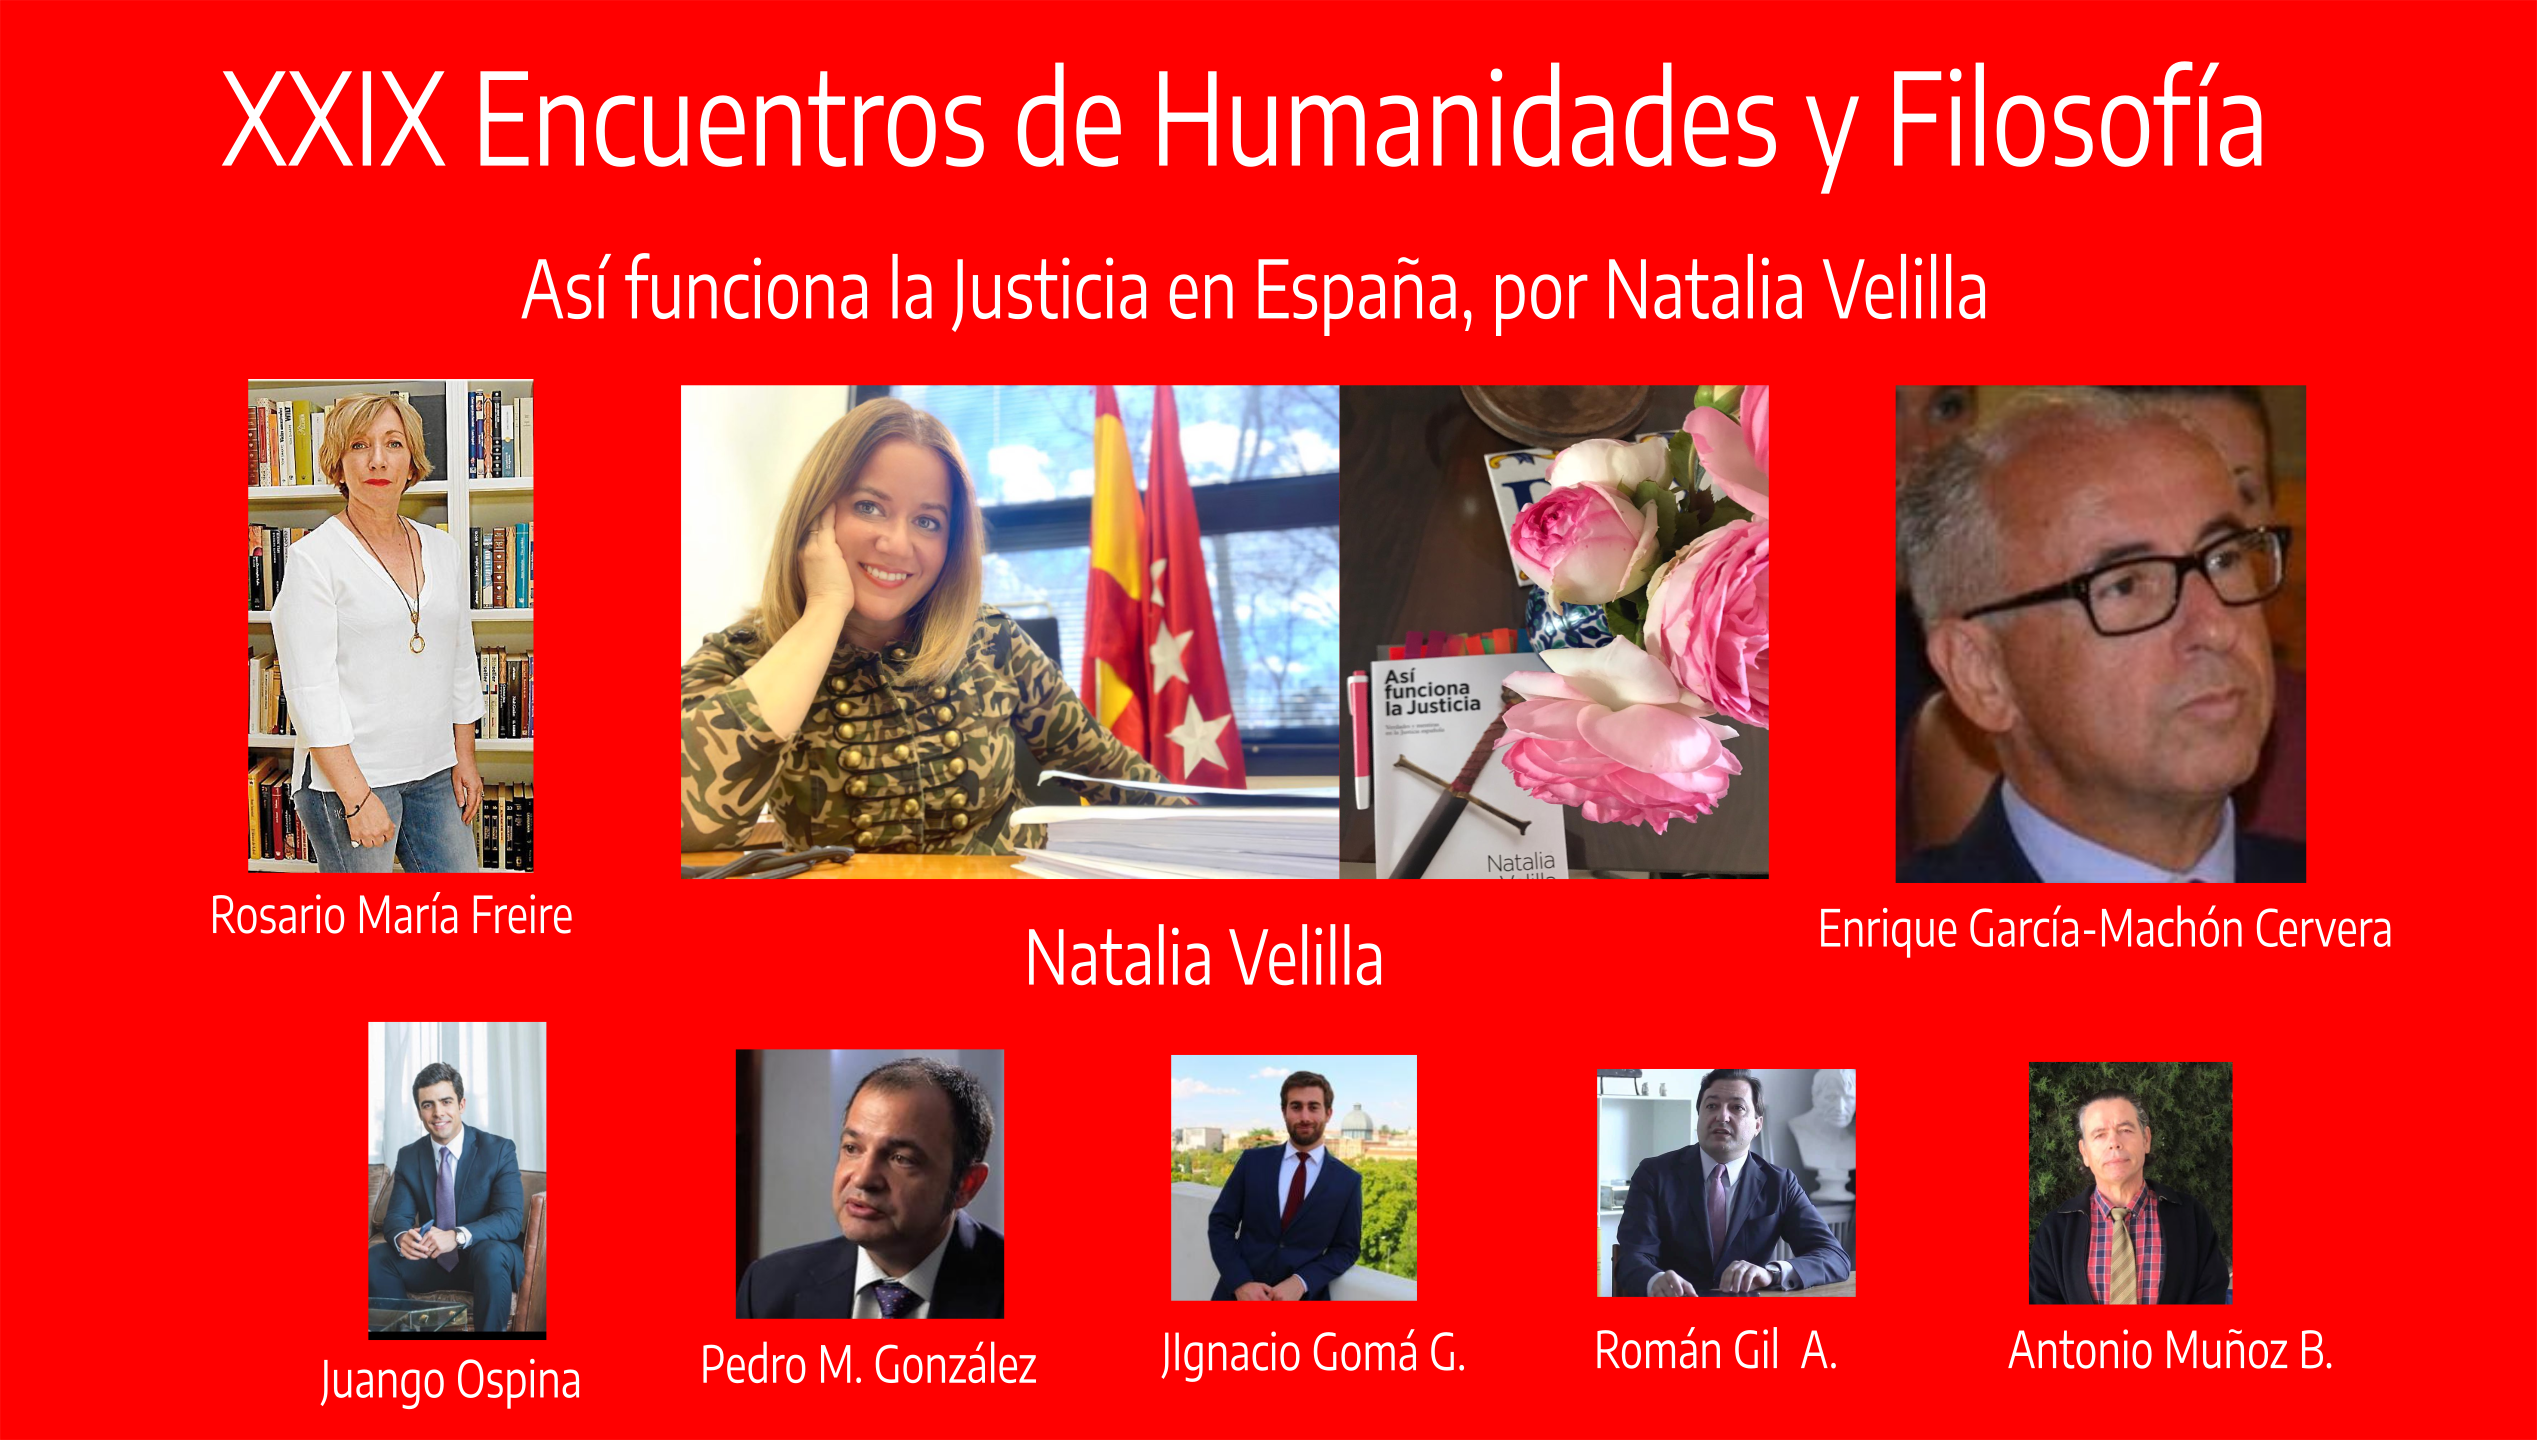 XXVIII Encuentros de Humanidades y Filosfofía, El buen ciudadano español, por Victor Lapuente.